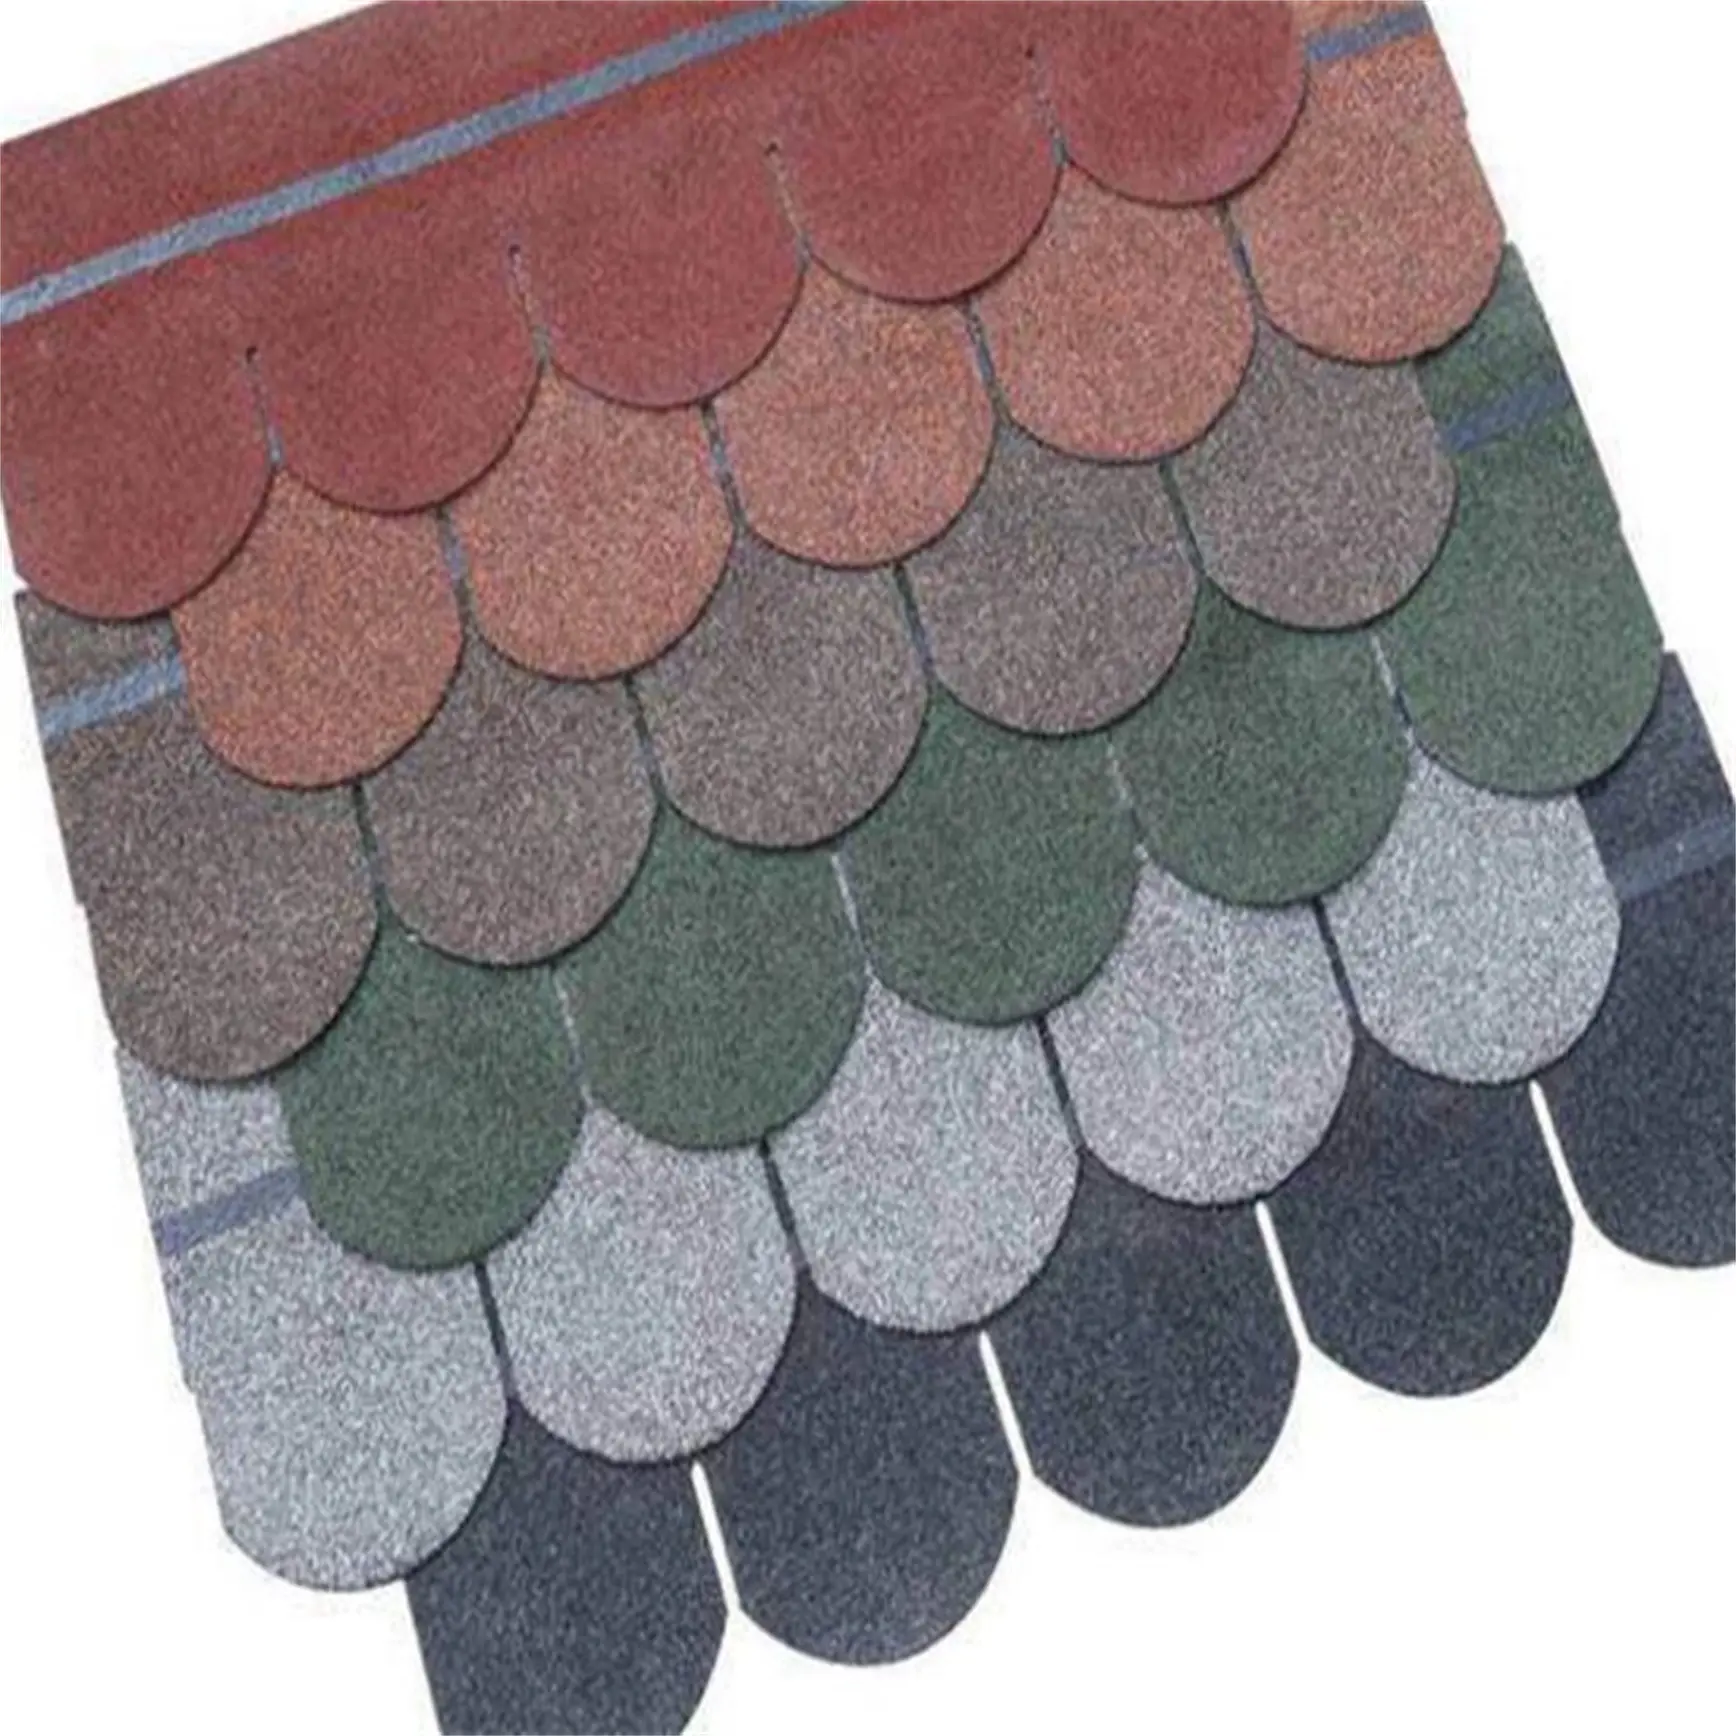 Membrana de cubierta de tejado impermeabilizante de Tejas impermeables para Tejas asfálticas de la fábrica ROCKPRO China